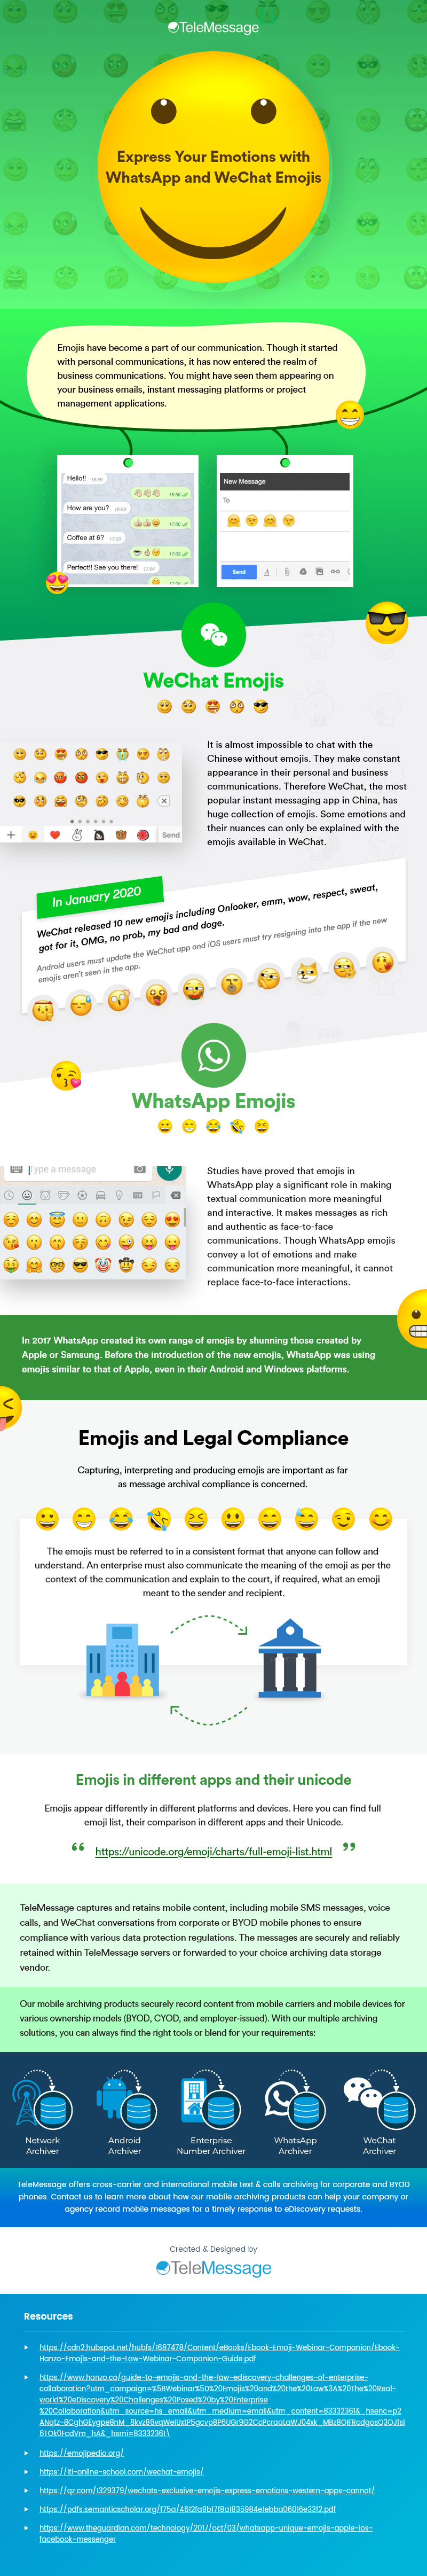 WhatsApp-WeChat-Emojis